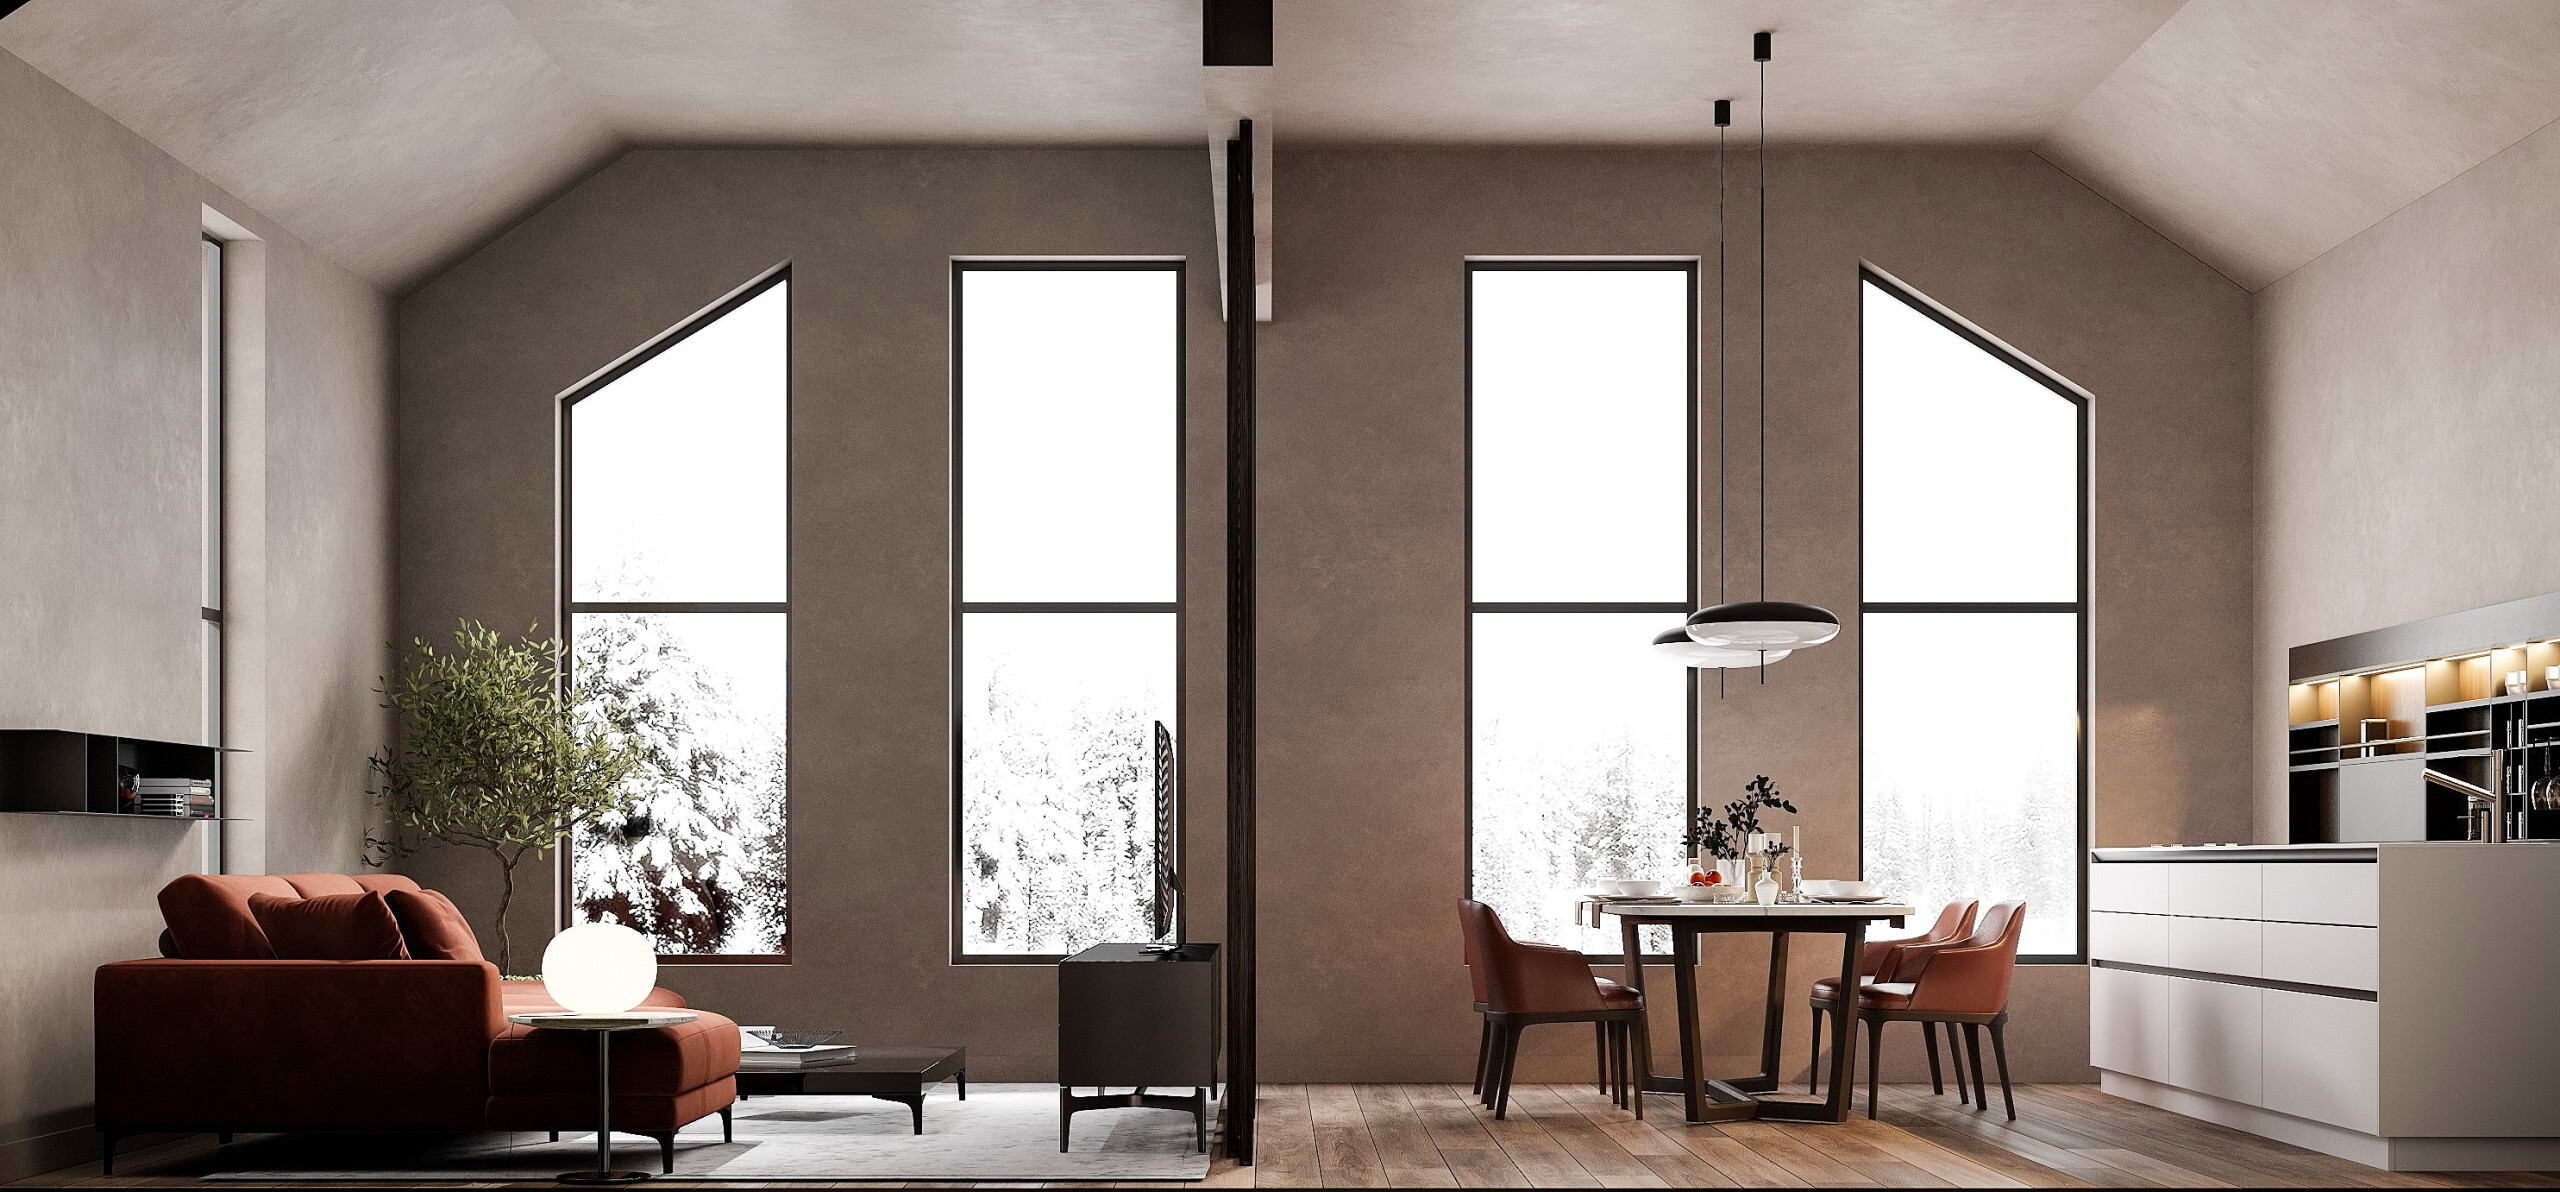 Интерьер кухни с окном, световыми линиями, жалюзи, вертикальными жалюзи, рейками с подсветкой и подсветкой настенной в современном стиле